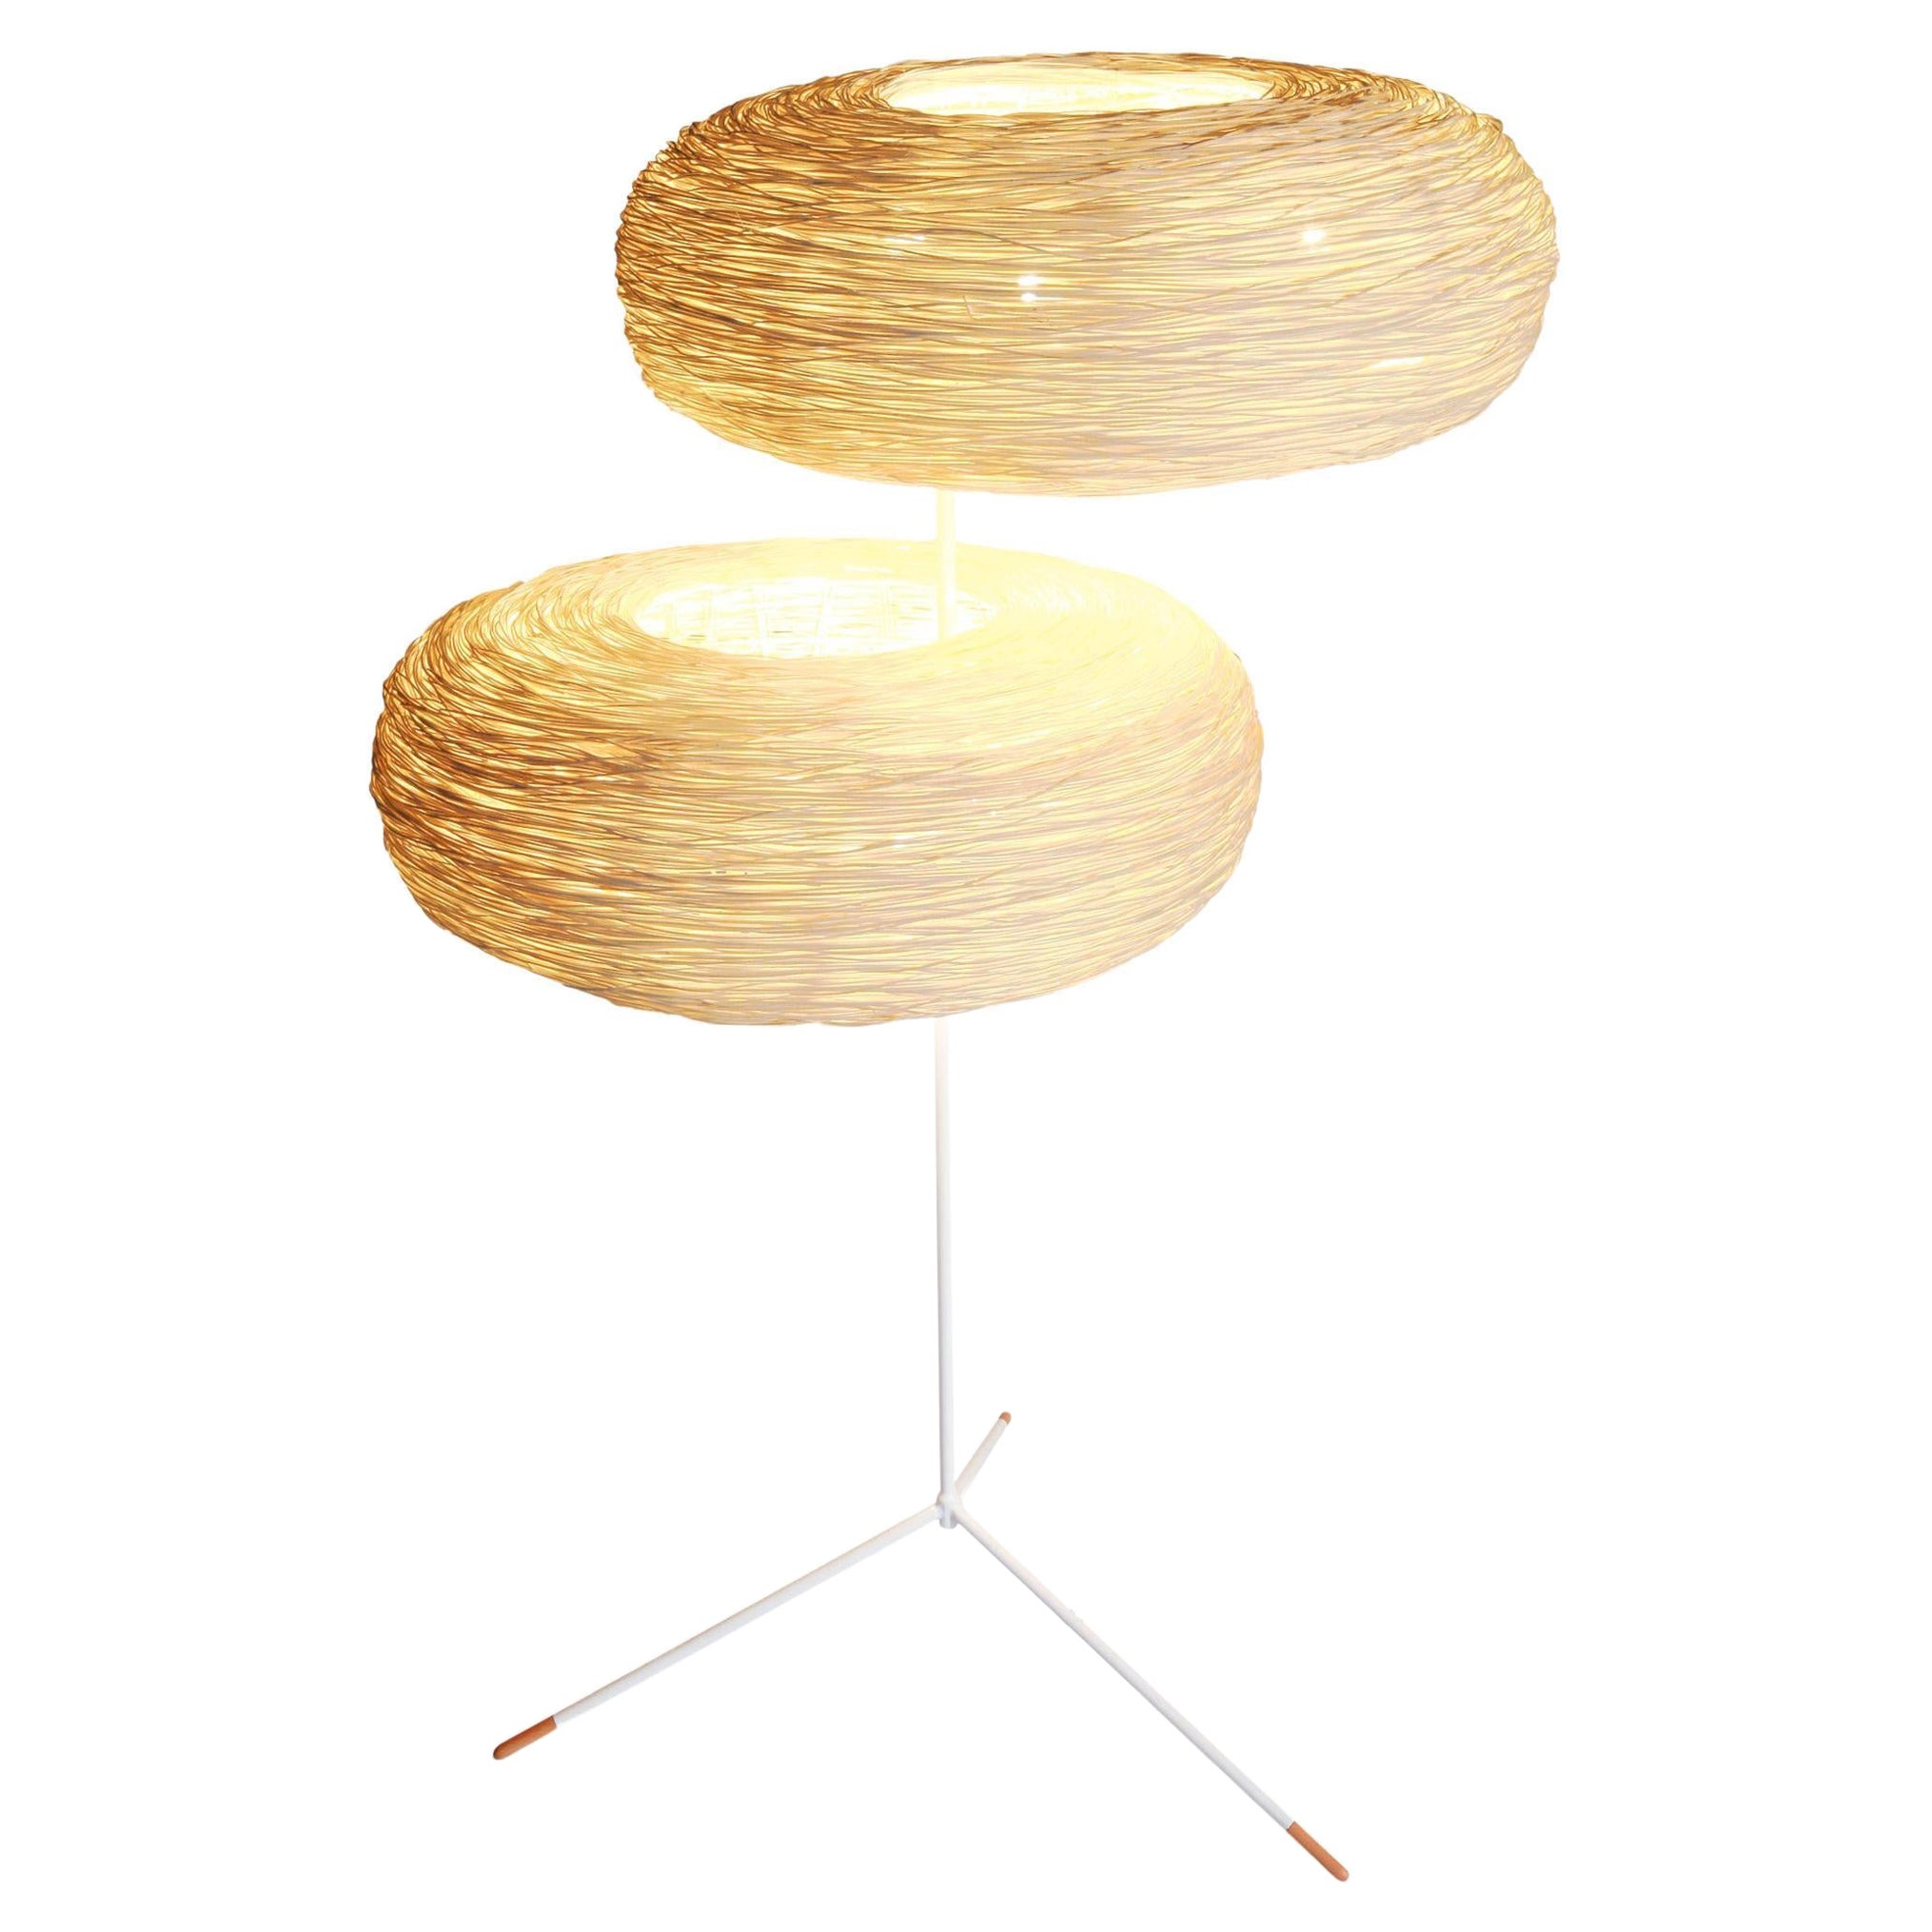 Double World par Ango, design de lampadaire en rotin tressé à la main